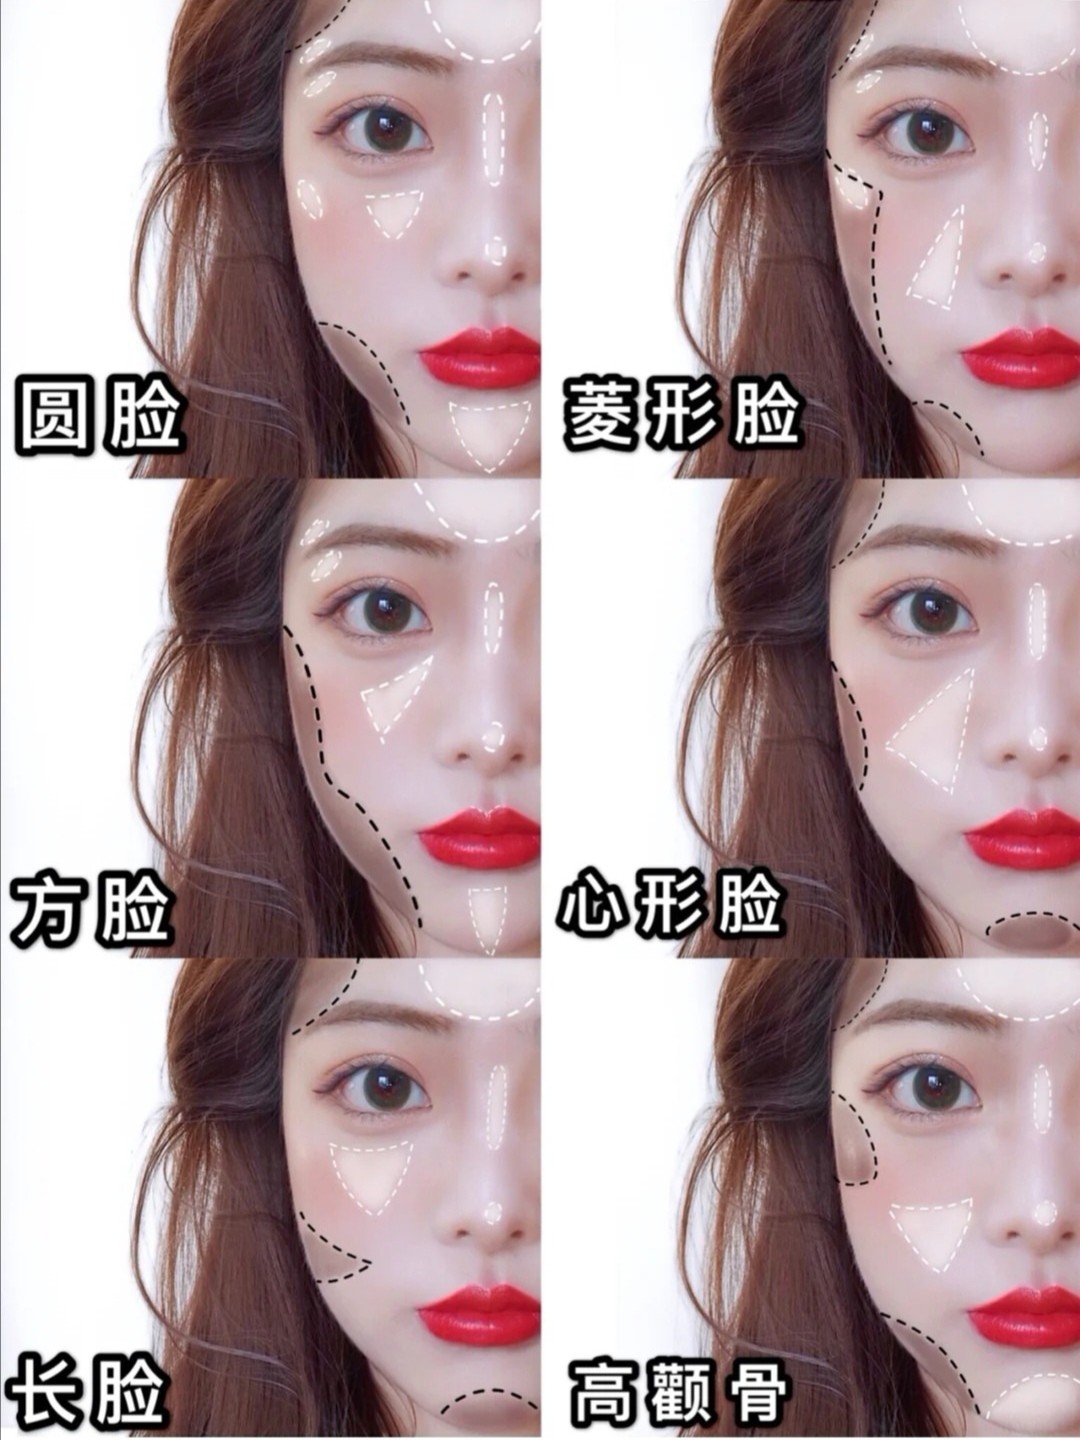 不同脸型修容高光画法!显脸小教程